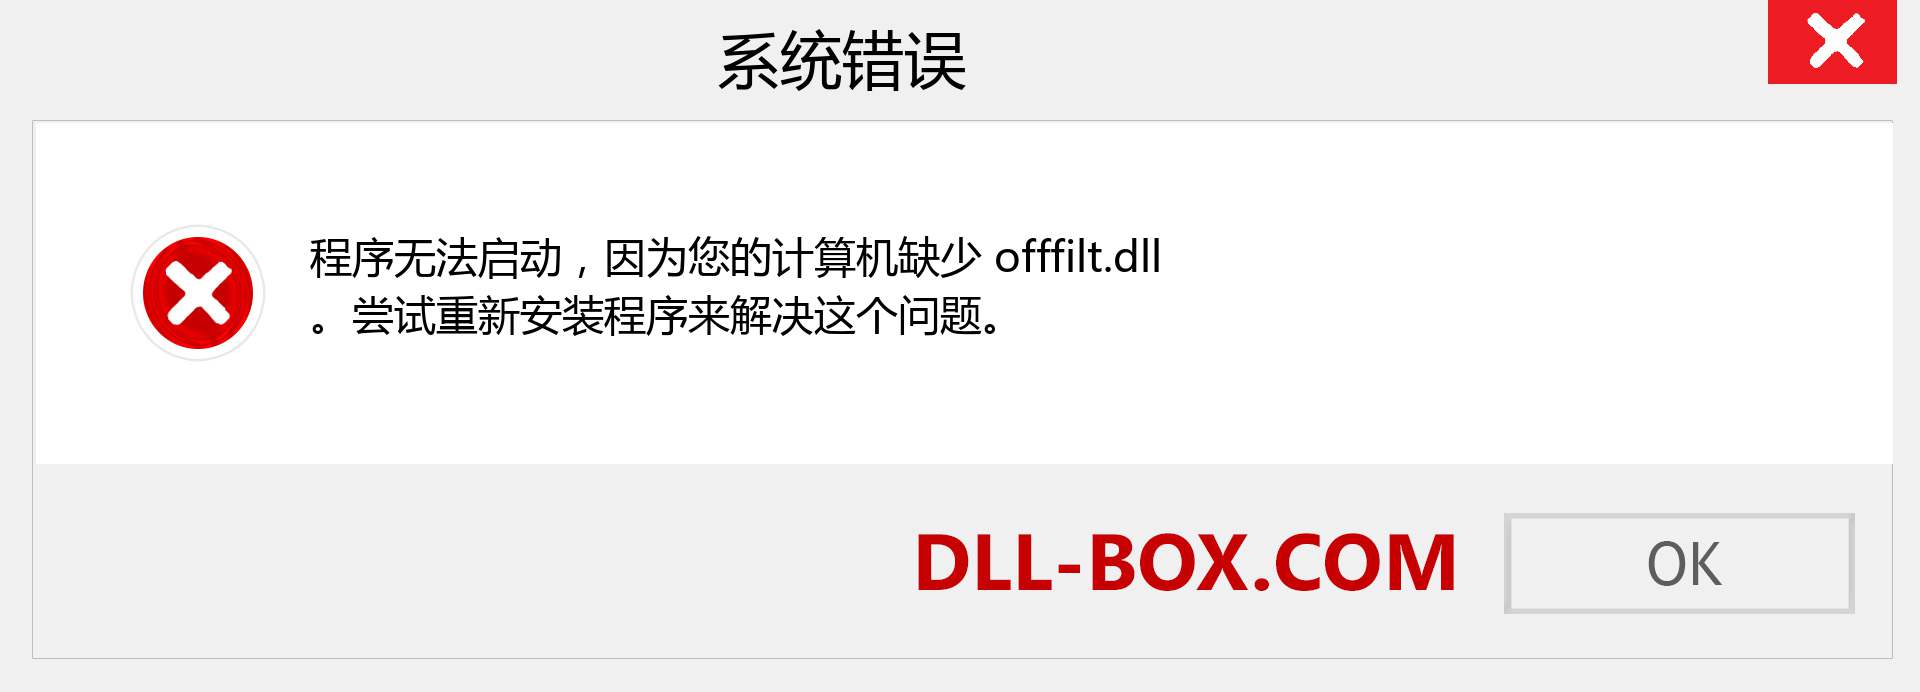 offfilt.dll 文件丢失？。 适用于 Windows 7、8、10 的下载 - 修复 Windows、照片、图像上的 offfilt dll 丢失错误